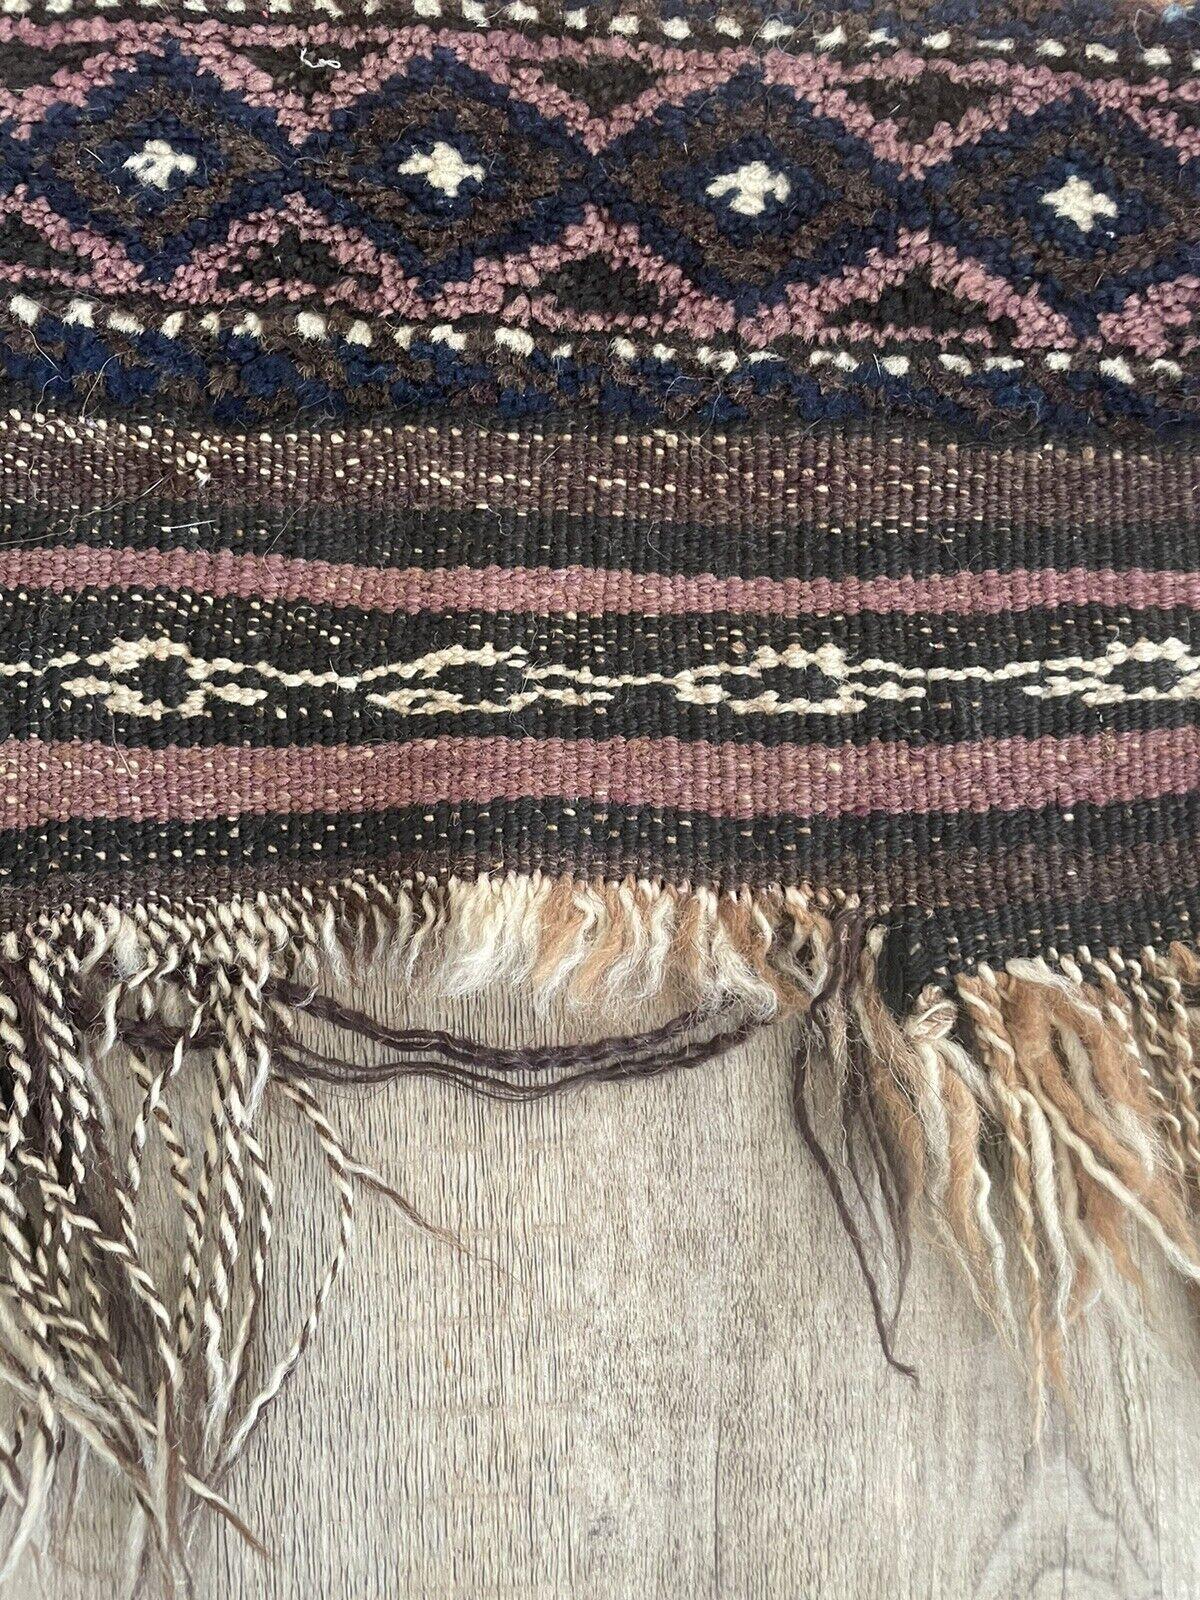 Handgefertigter antiker afghanischer Belutsch-Sammelteppich aus den 1920er Jahren:

Abmessungen:
Dieser rechteckige Teppich misst ungefähr 2,3 Fuß (72 cm) in der Breite und 5 Fuß (155 cm) in der Höhe.
Durch seine kompakte Größe eignet er sich für